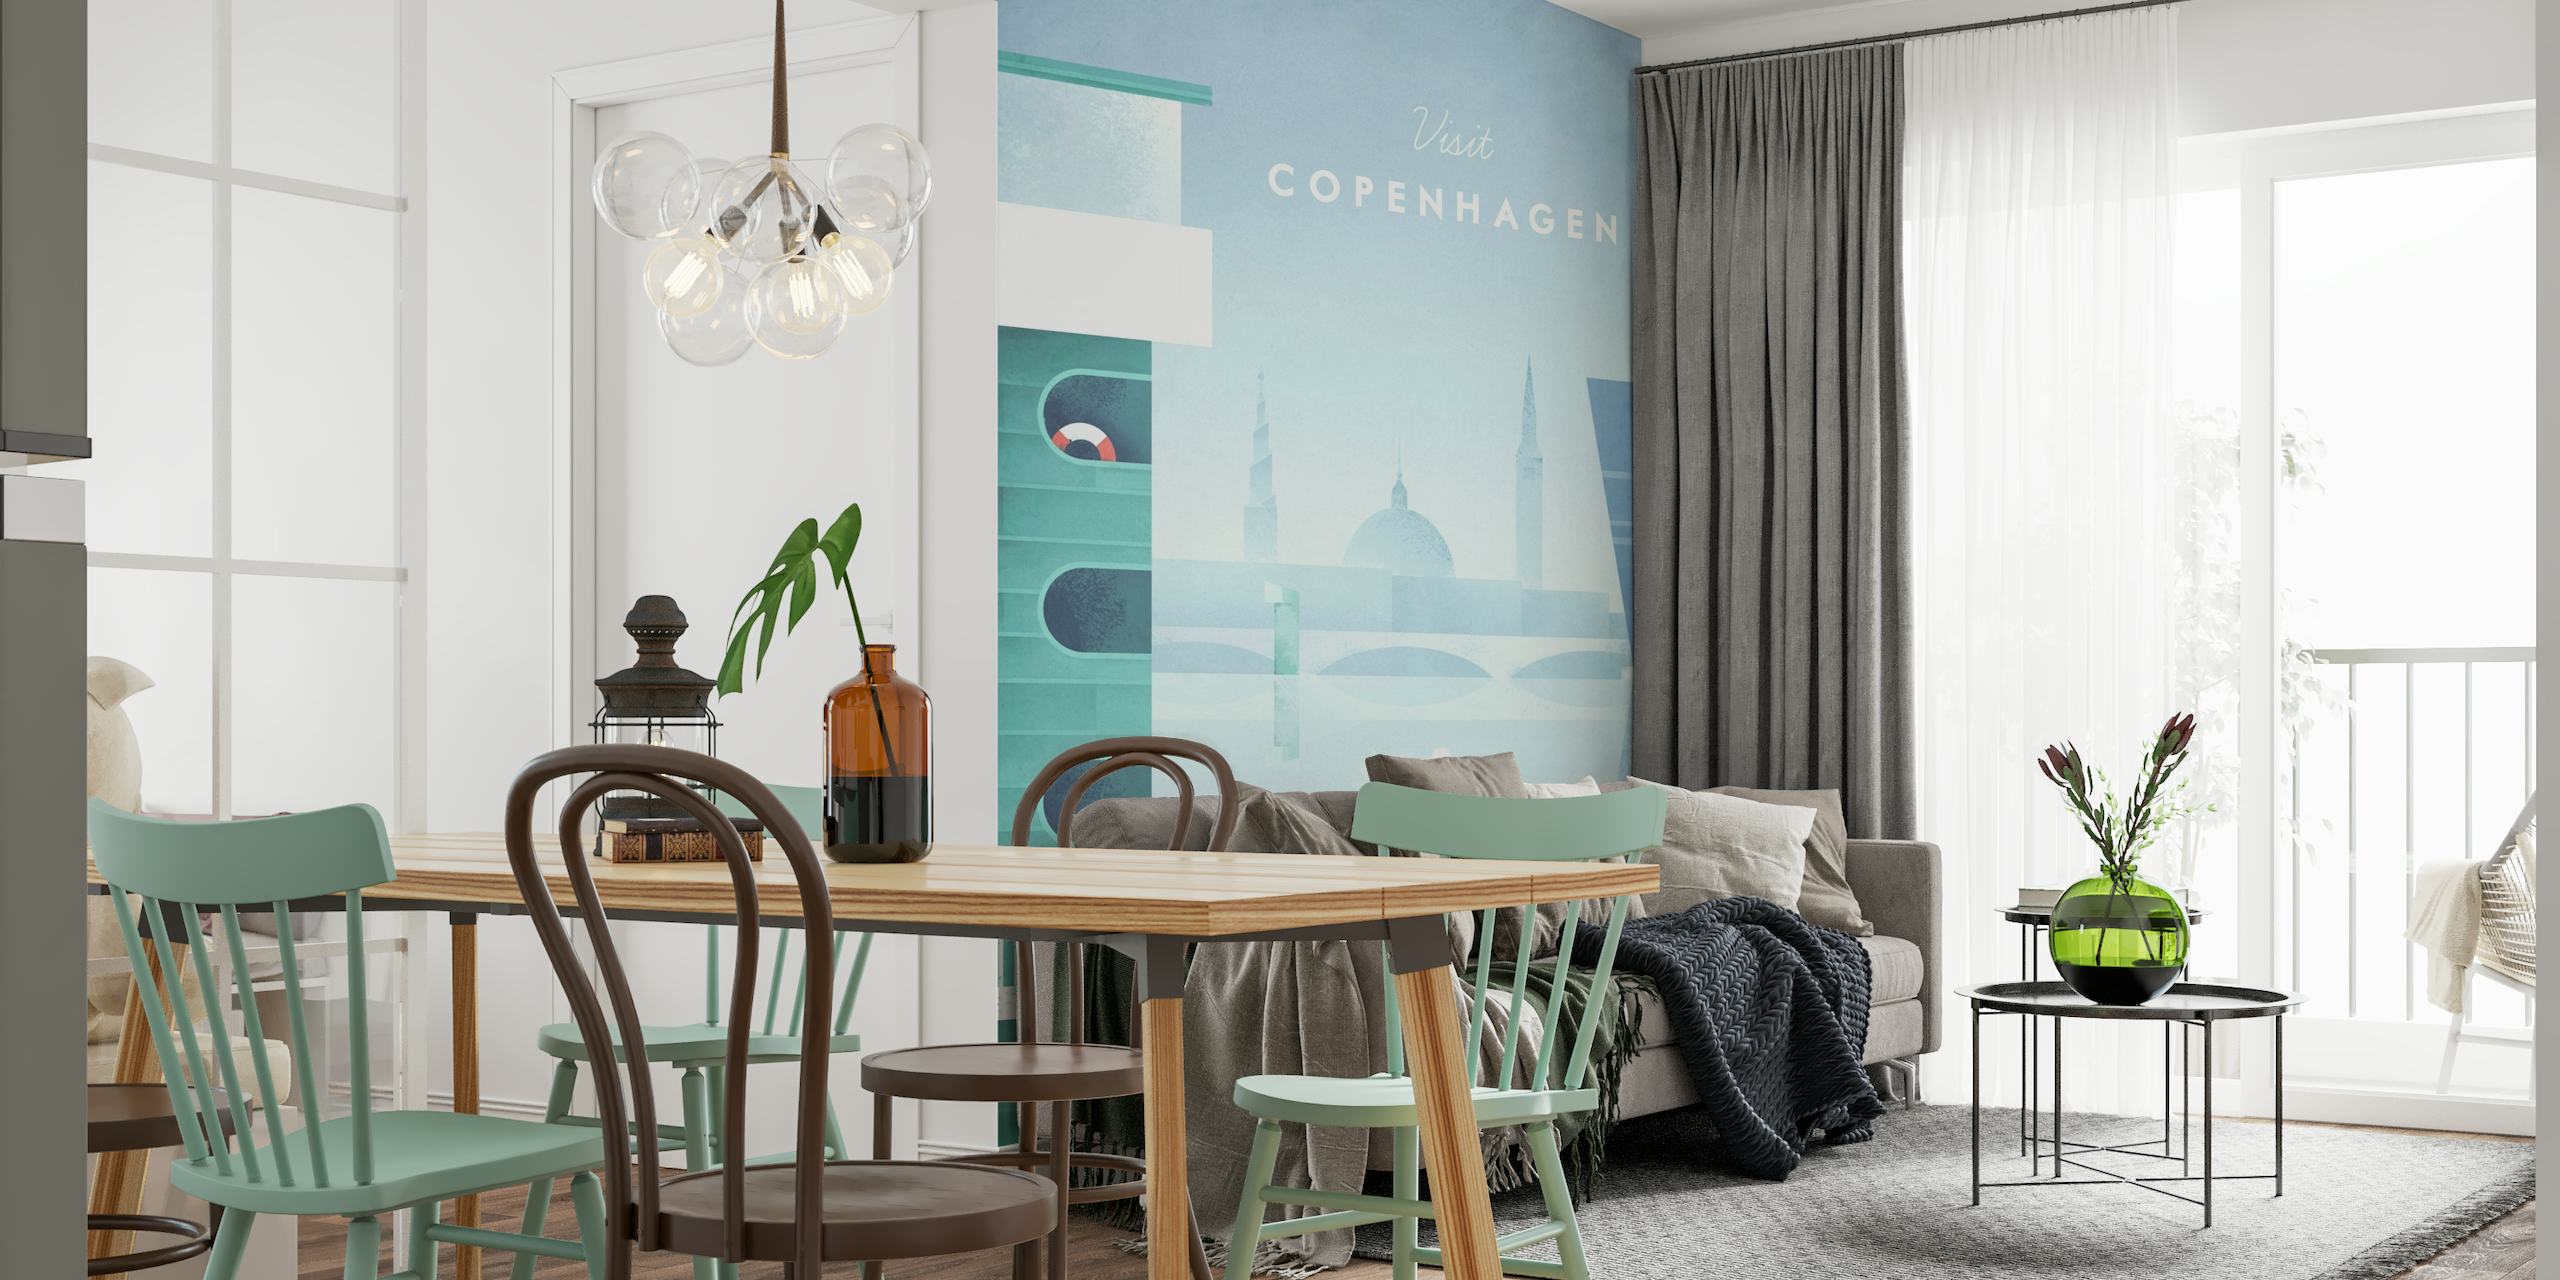 Copenhagen Travel Poster behang